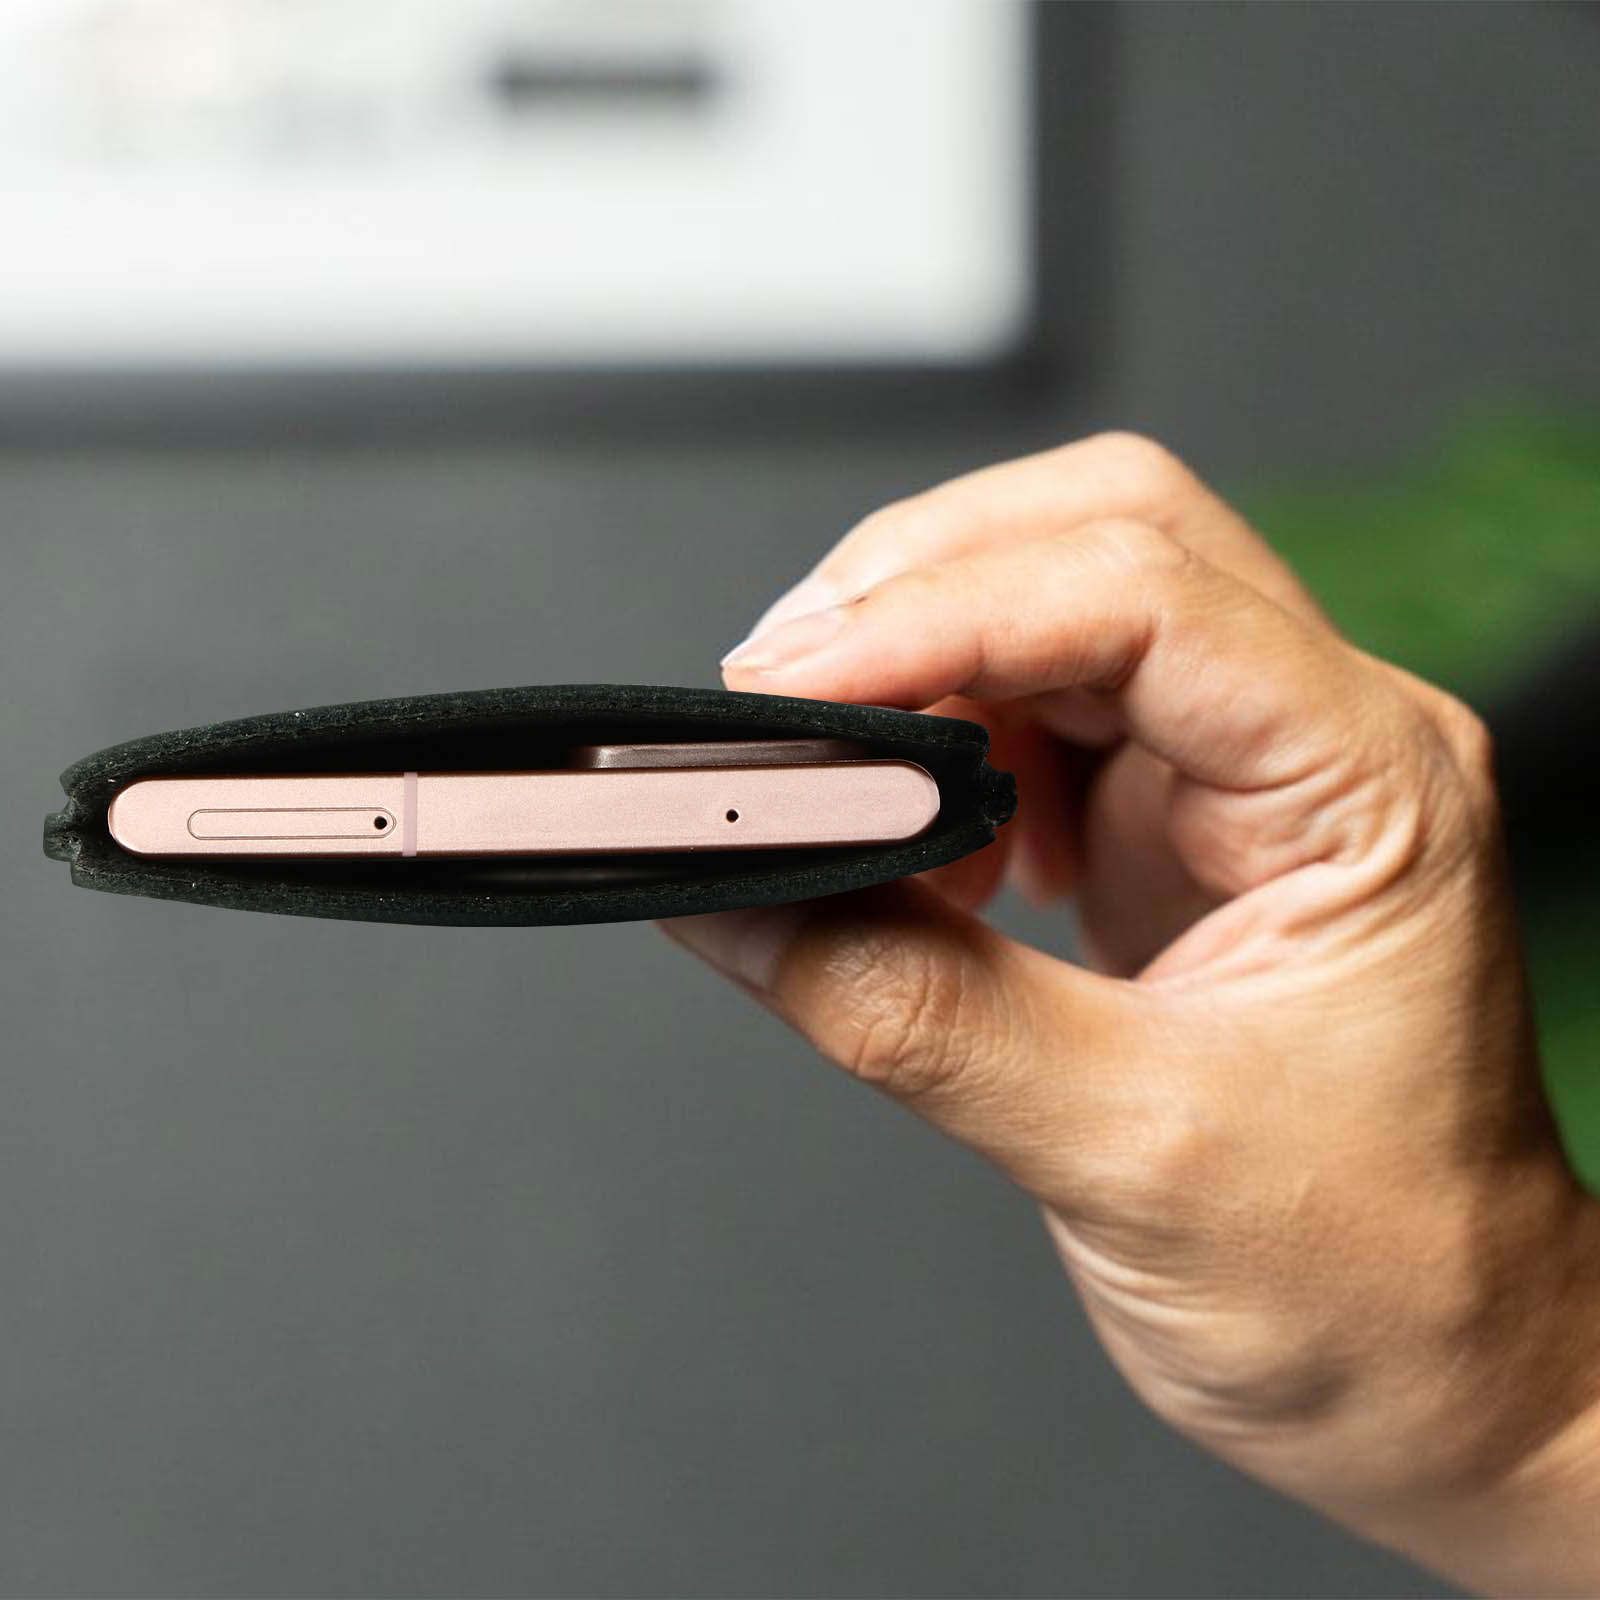 Etui universel élégant pour smartphone jusqu'à 6,7 pouces en similicuir  avec portefeuille - Noir - Acheter sur PhoneLook